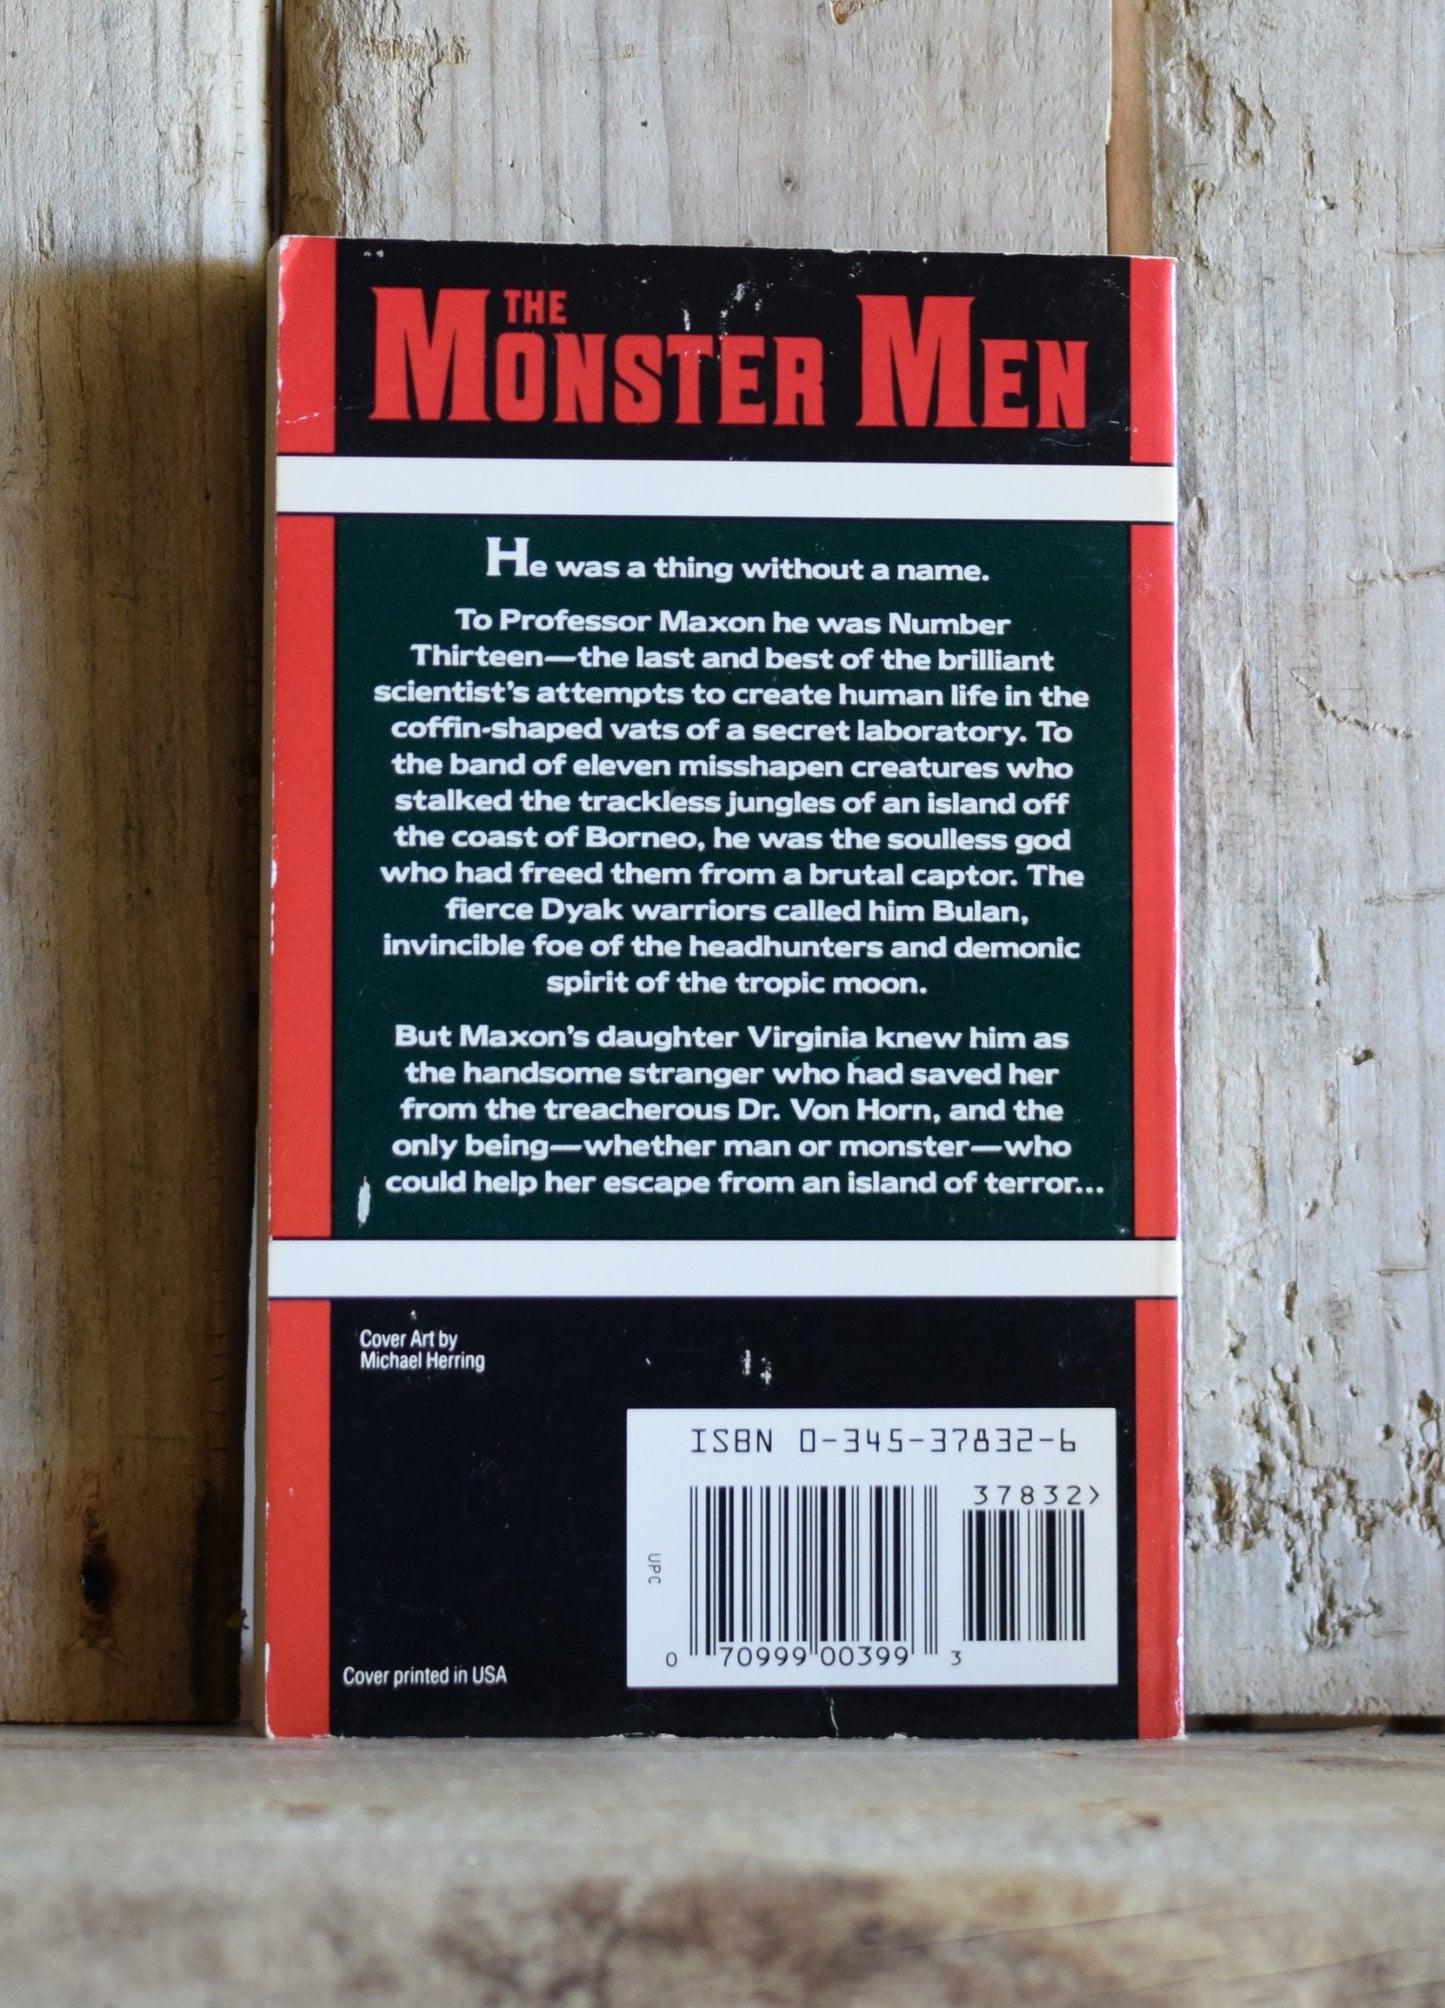 Vintage Sci-Fi Paperback Novel: Edger Rice Burroughs - The Monster Men